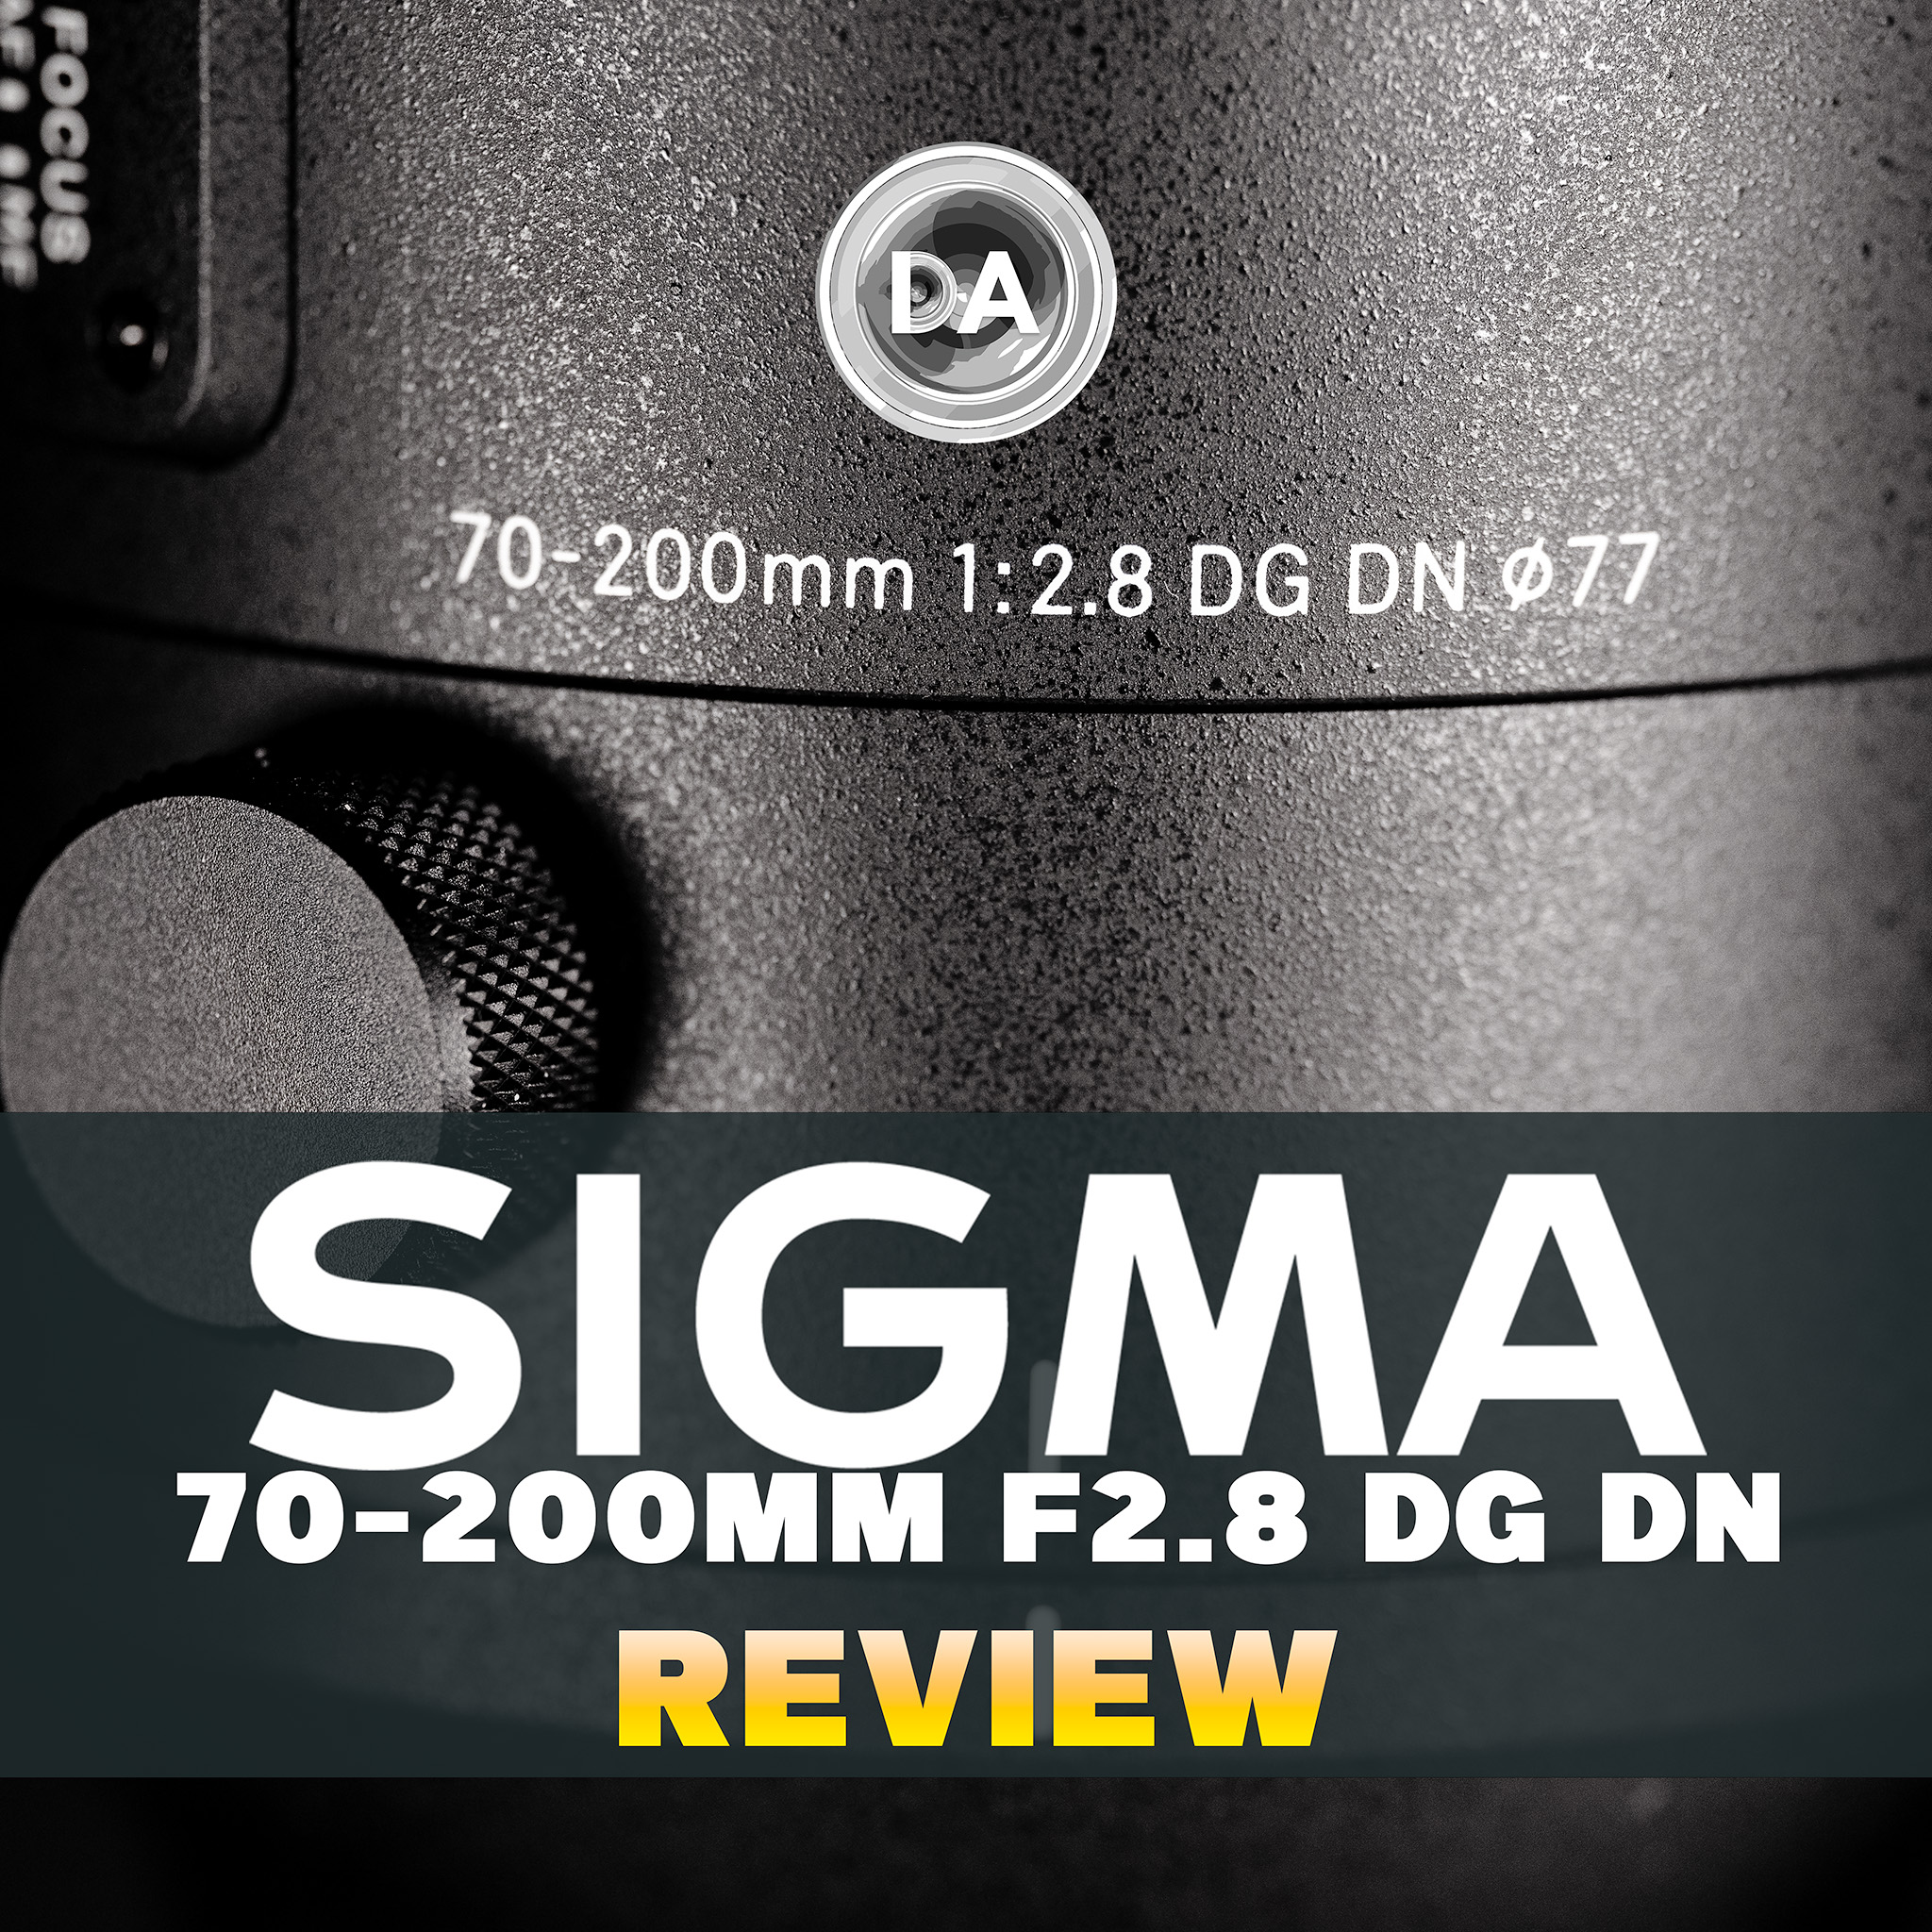 Sigma SIGMA 70-200mm F2.8 DG DN OS on my Sony A9II